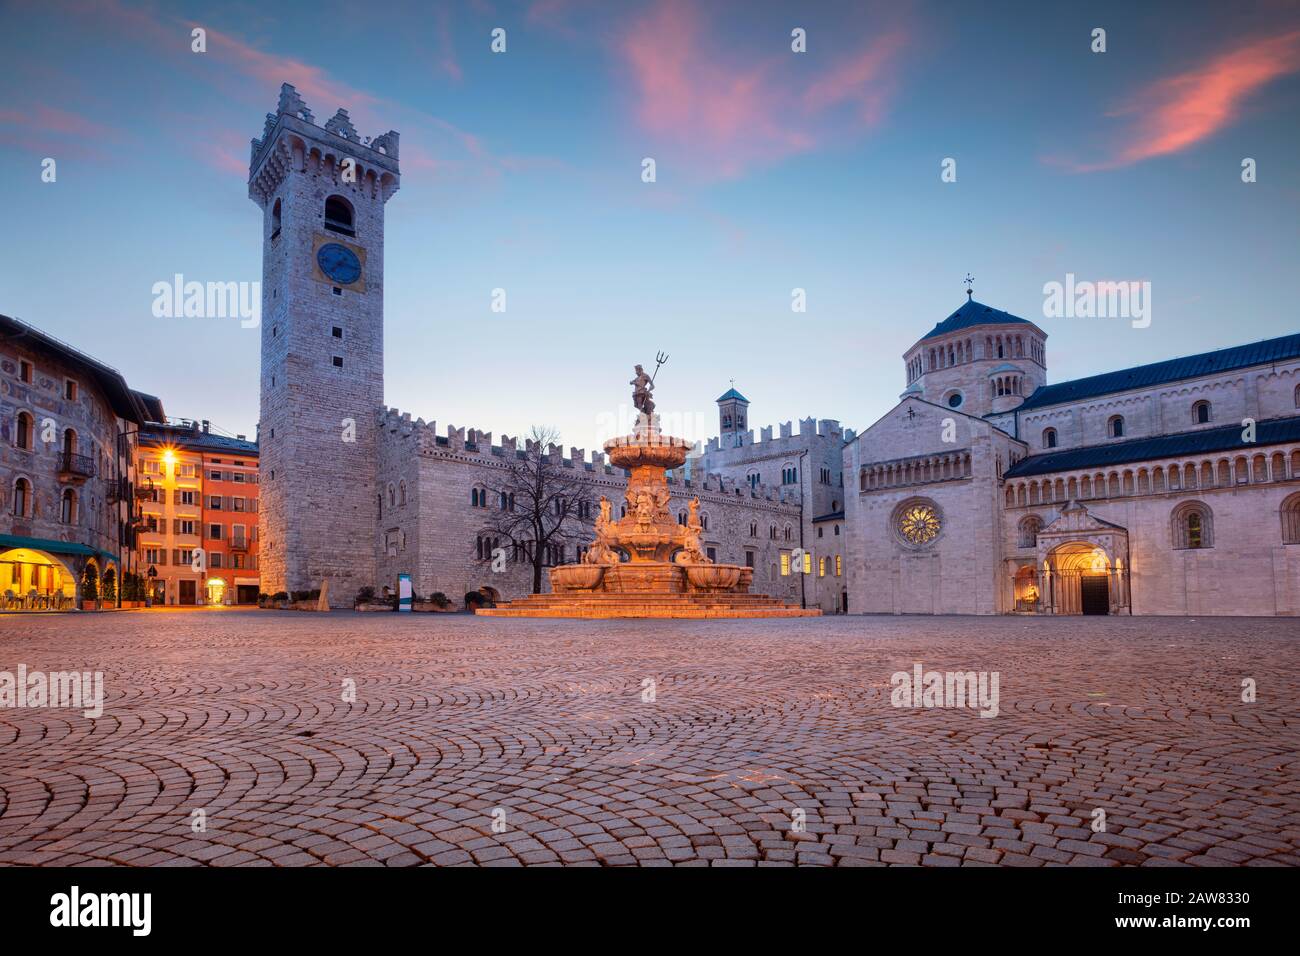 Trient, Italien. Stadtbild der historischen Stadt Trient, Trentino, Italien während der blauen Dämmerung. Stockfoto